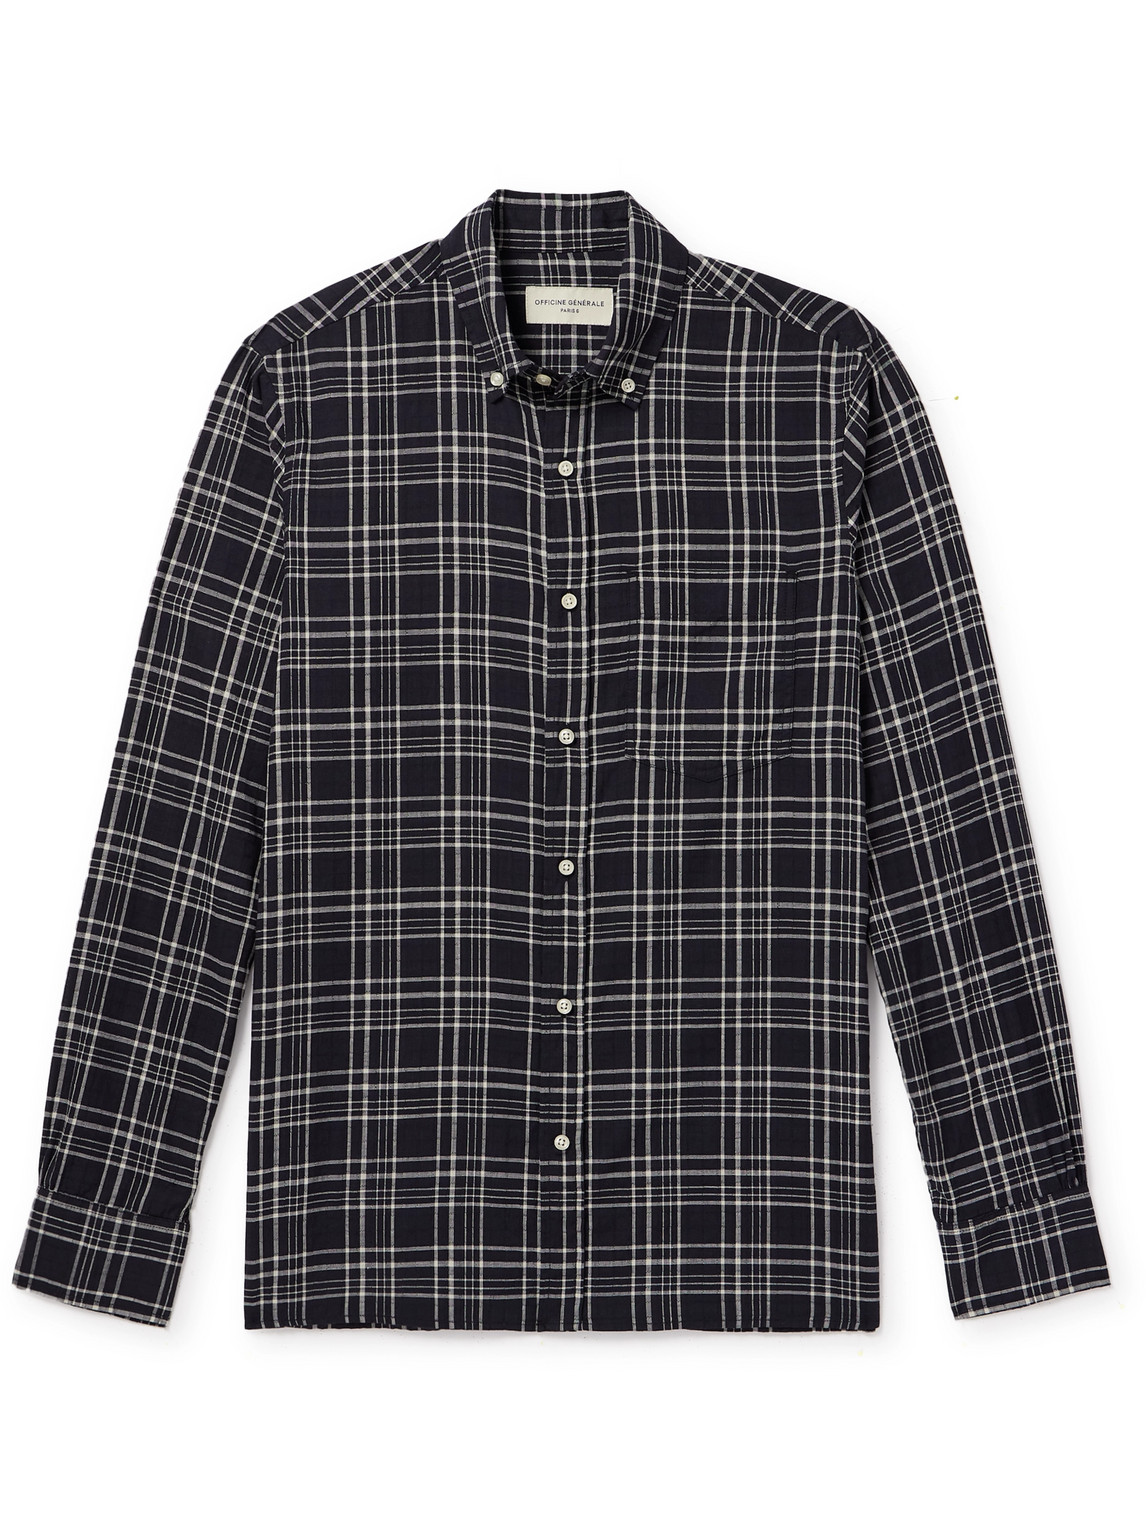 Officine Générale - Arsene Button-Down Collar Checked Cotton Shirt - Men - Black - L von Officine Générale